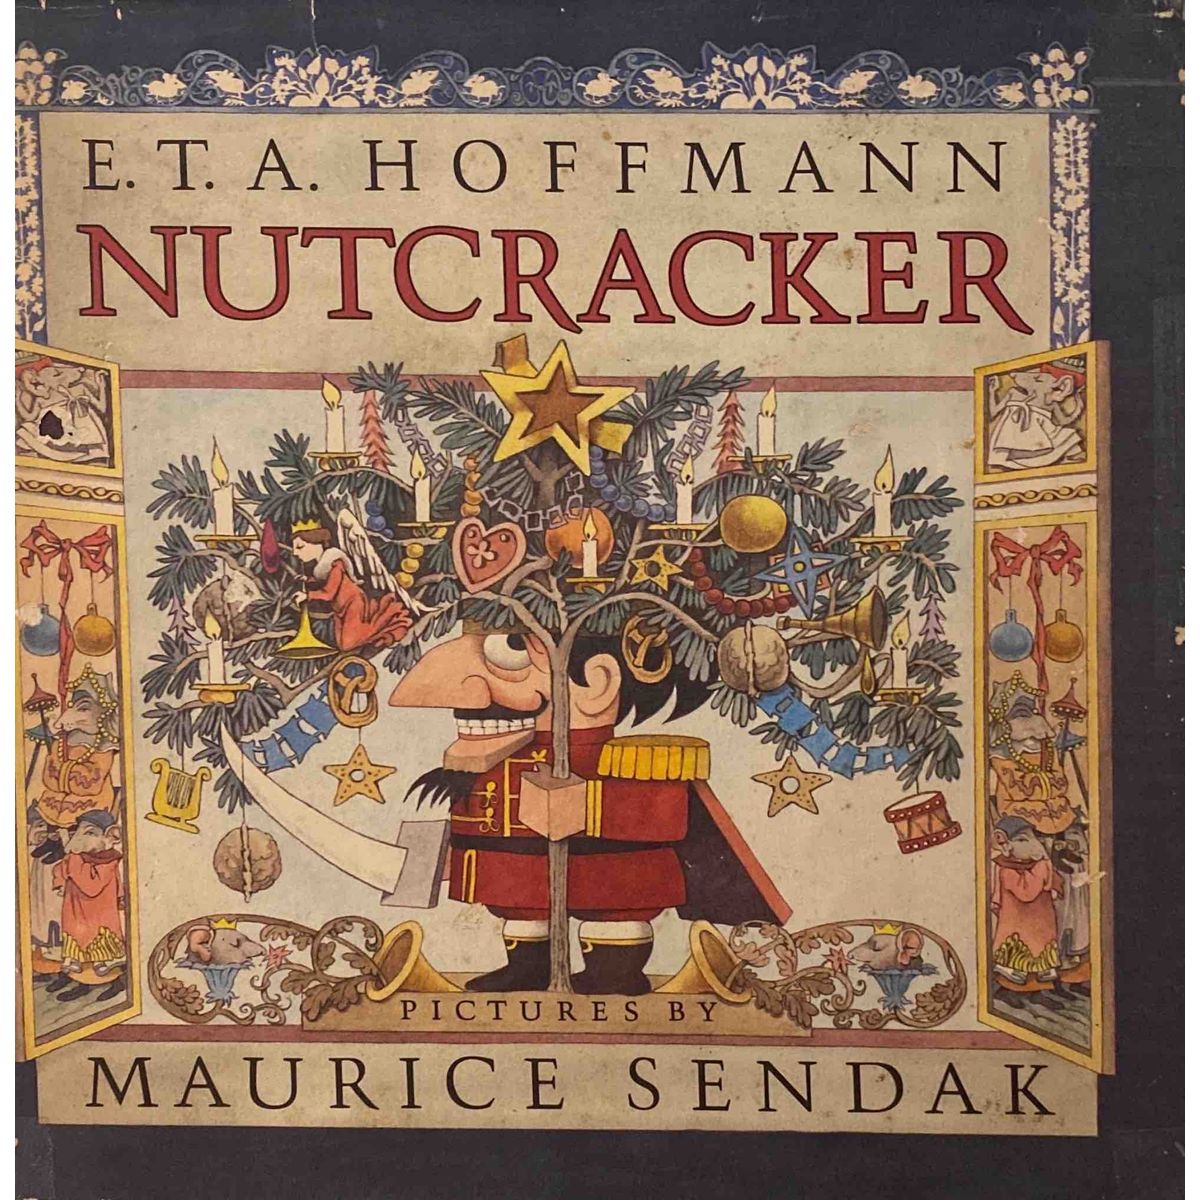 ISBN: 9780517552858 / 051755285X - Nutcracker by E.T.A. Hoffmann & Maurice Sendak [1984]